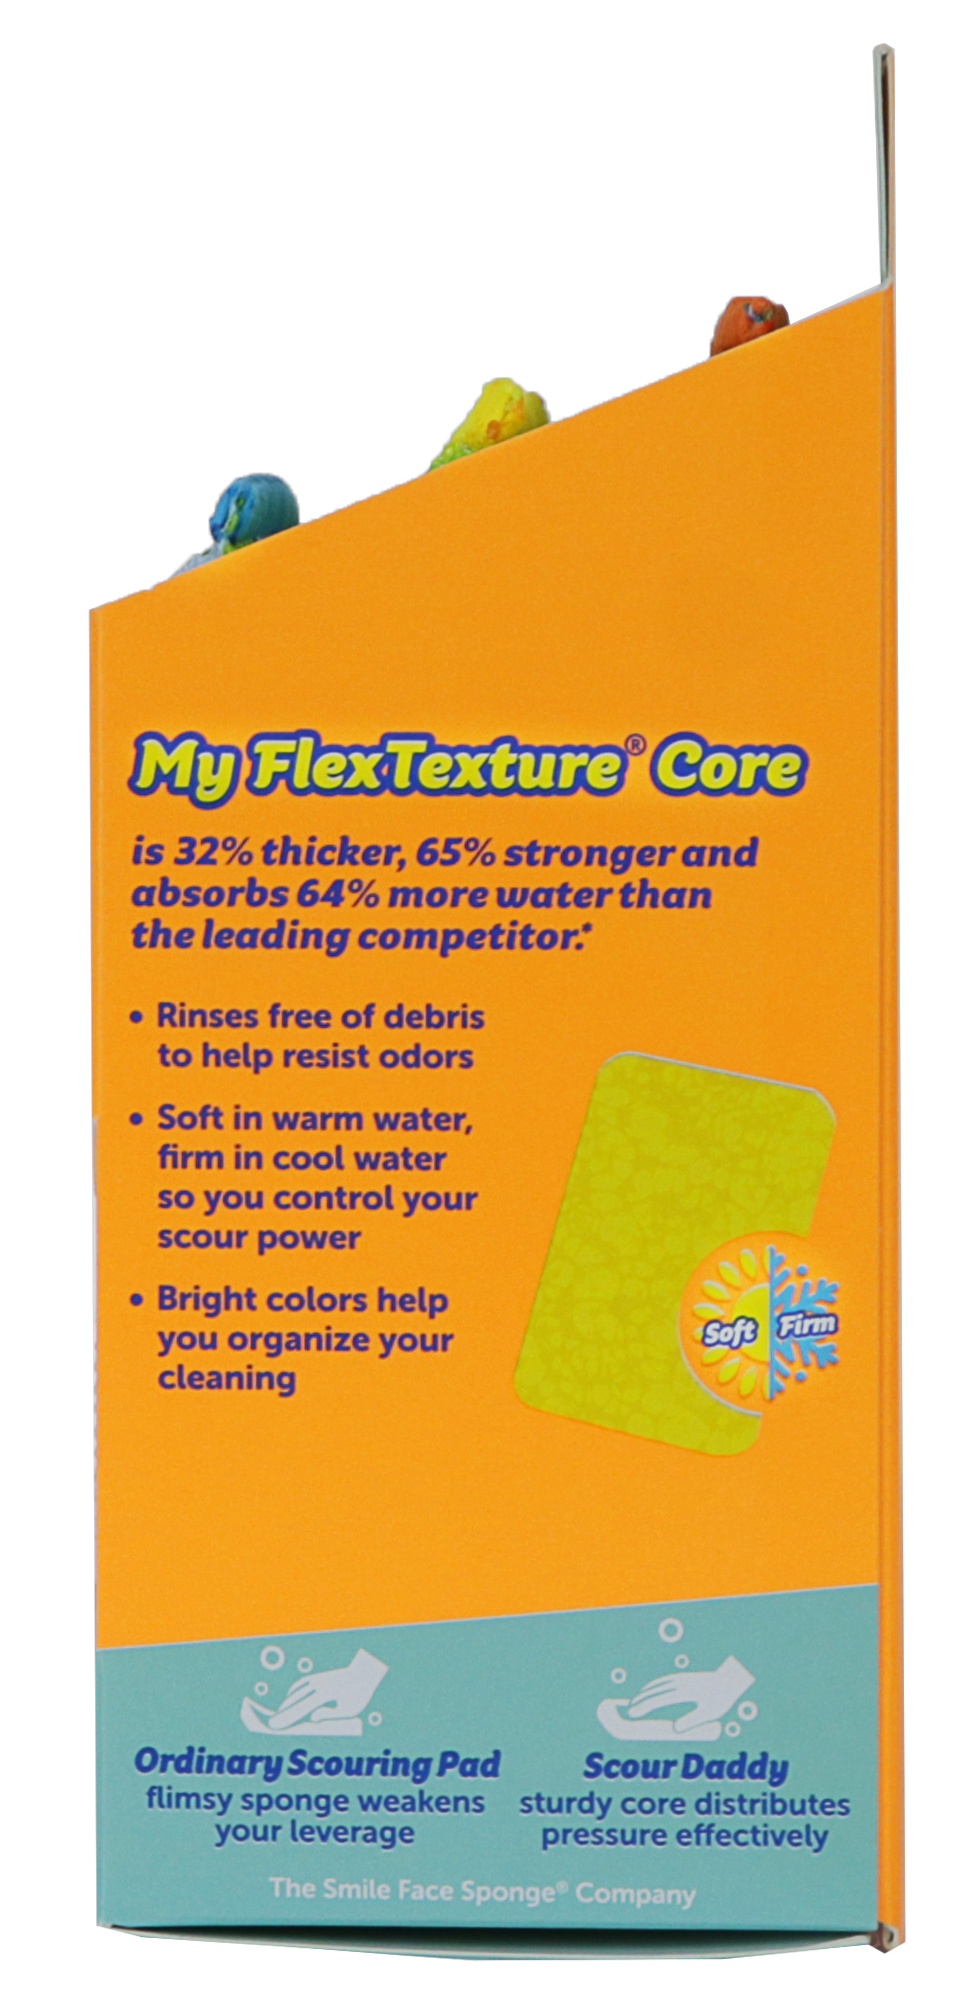 Brillo Scrub Max Kitchen Sponge (2-Count Case of 6), Blue